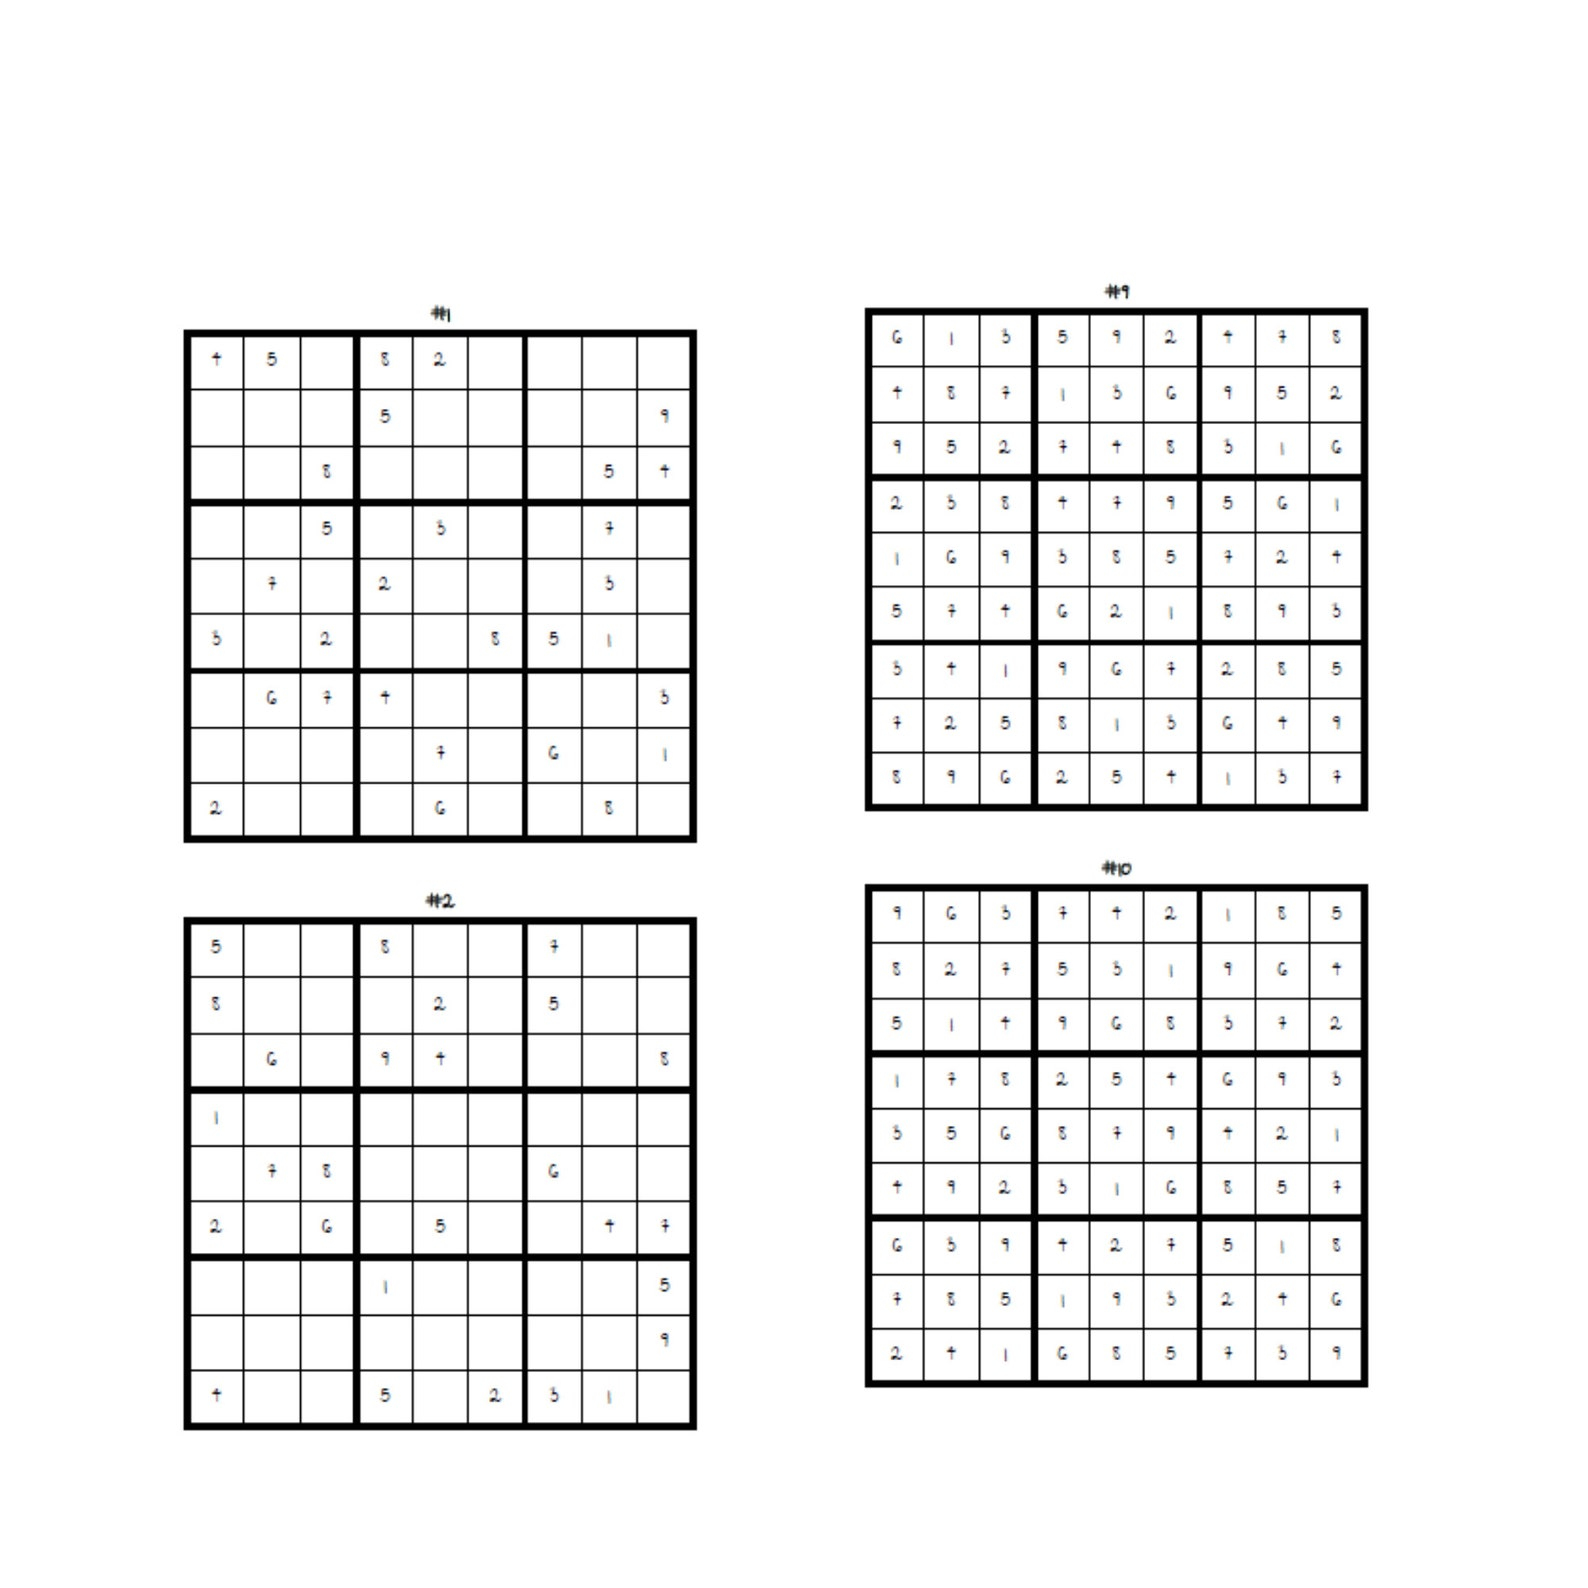 9x9 Grid Medium Sudoku Printable Printable Games Puzzles Etsy